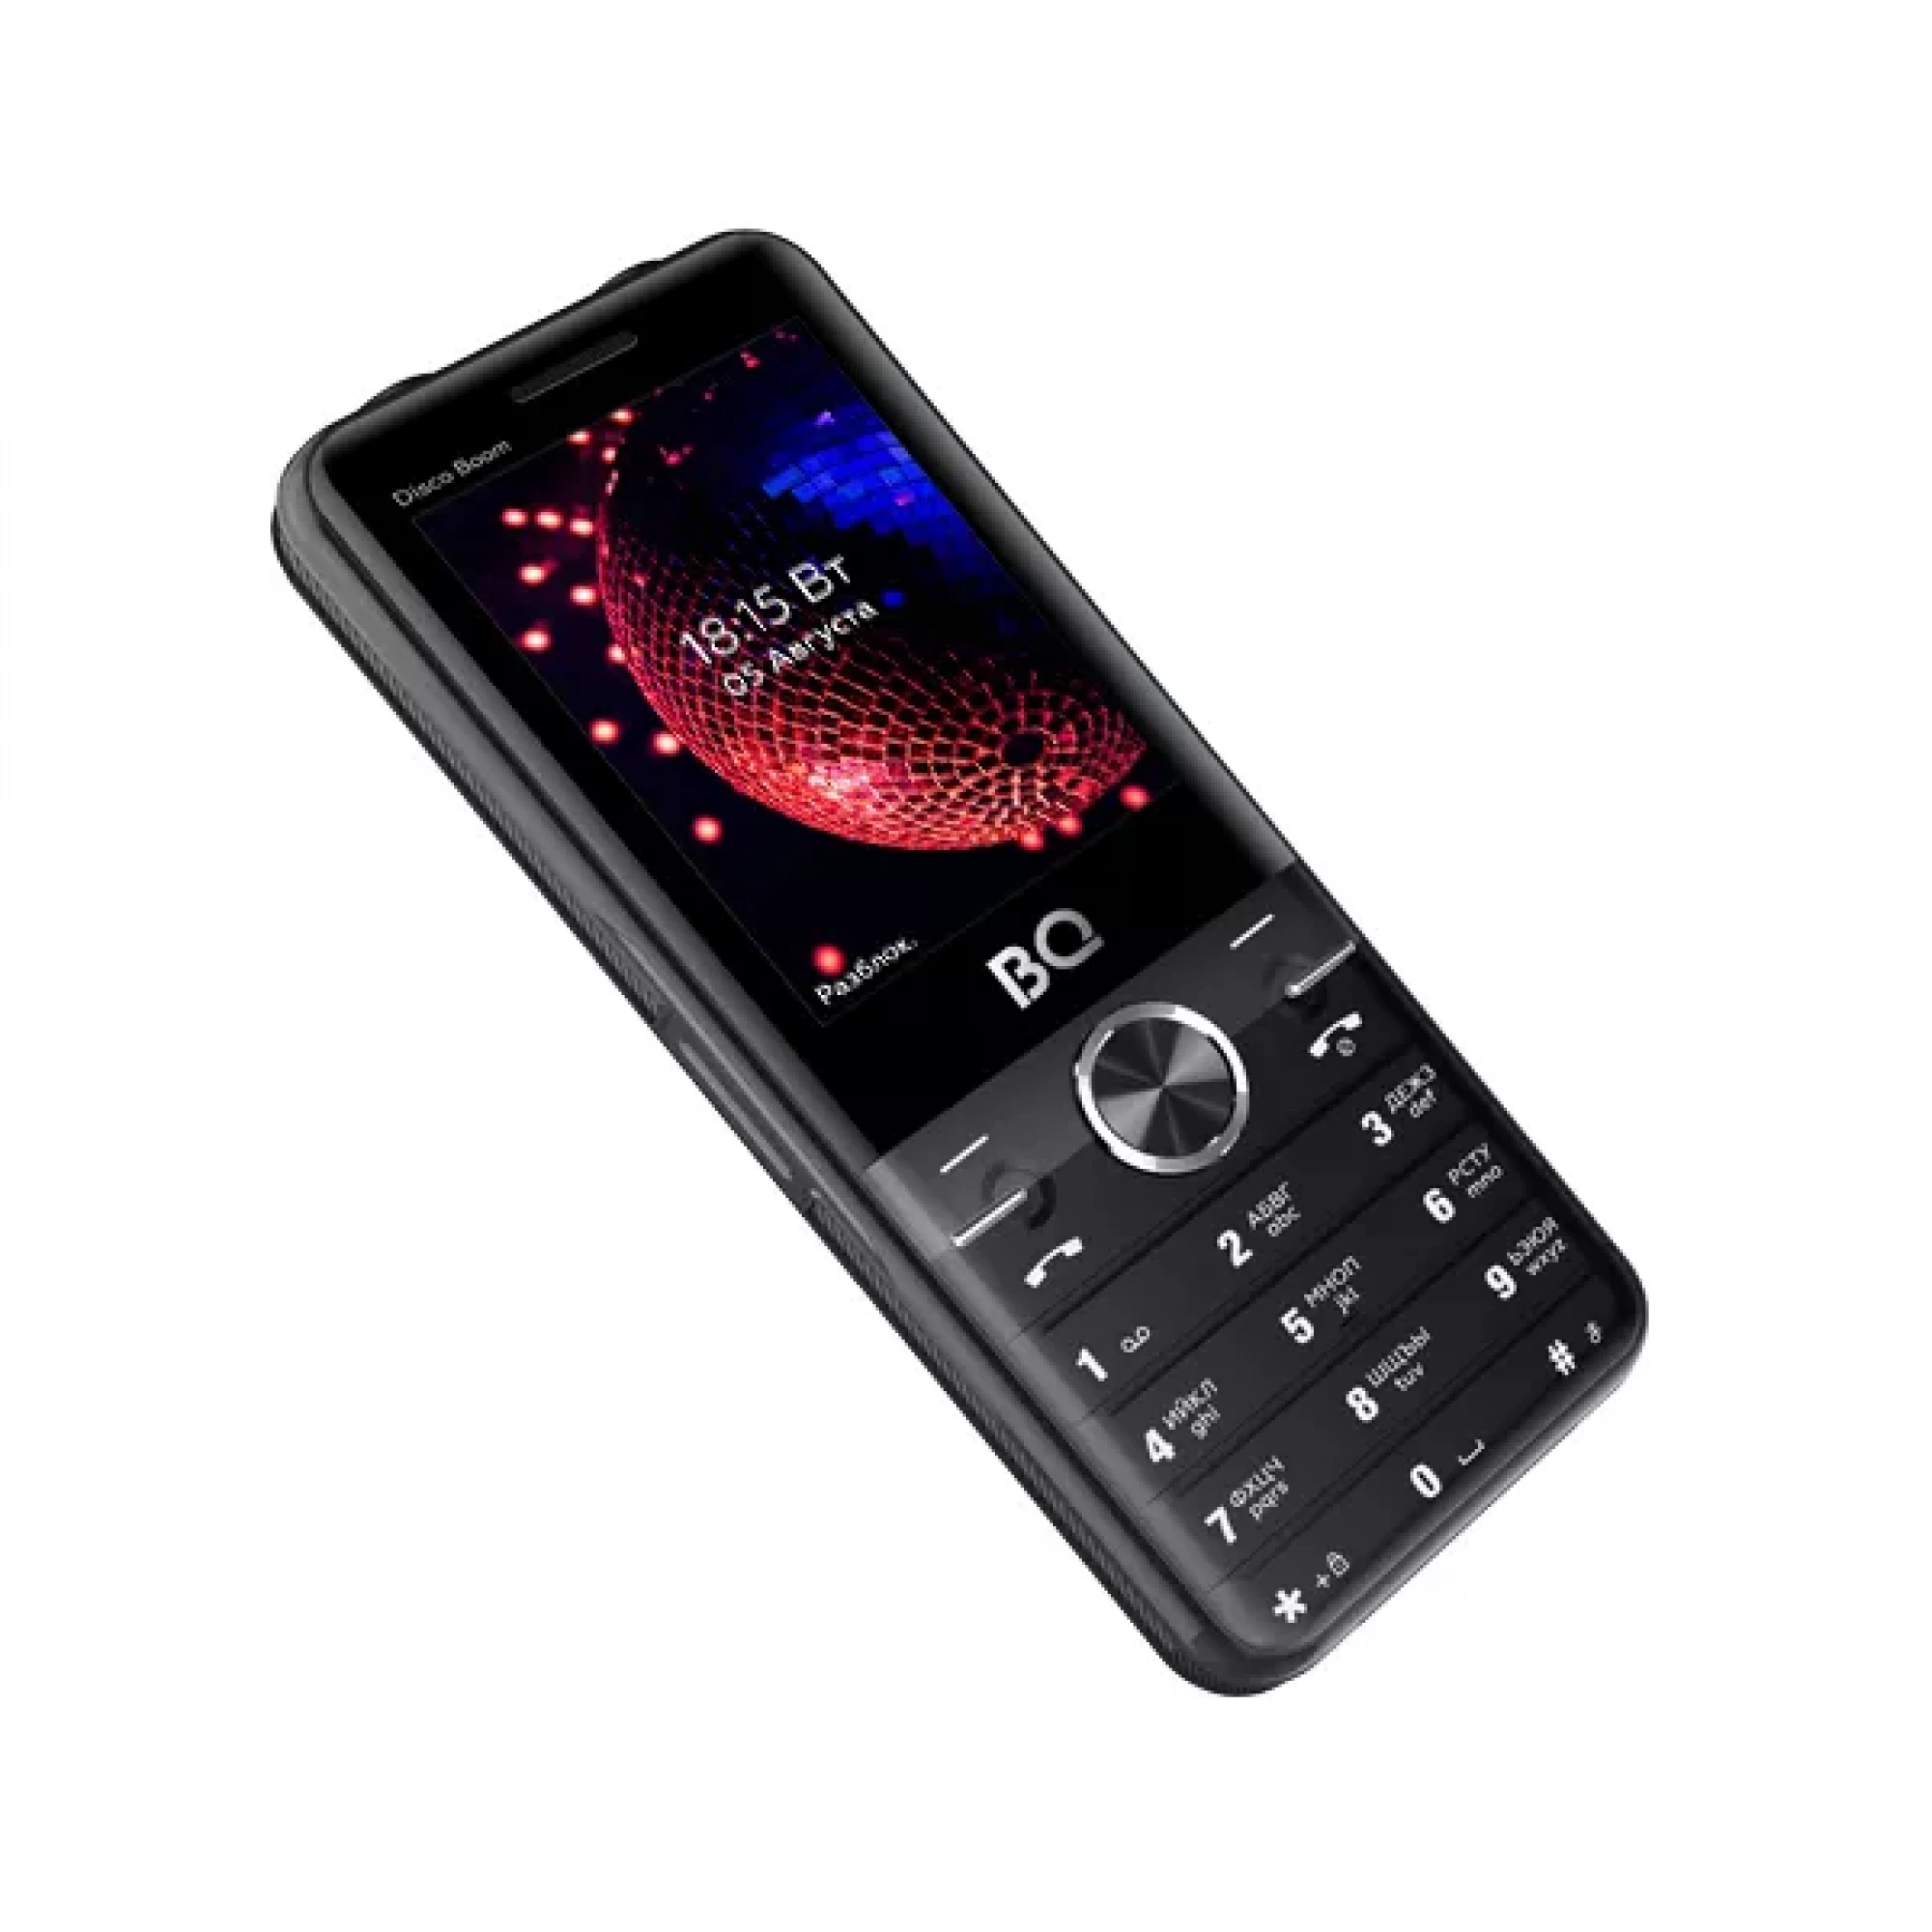 Мобильный телефон BQ BQ-2842 Disco Boom (черный)